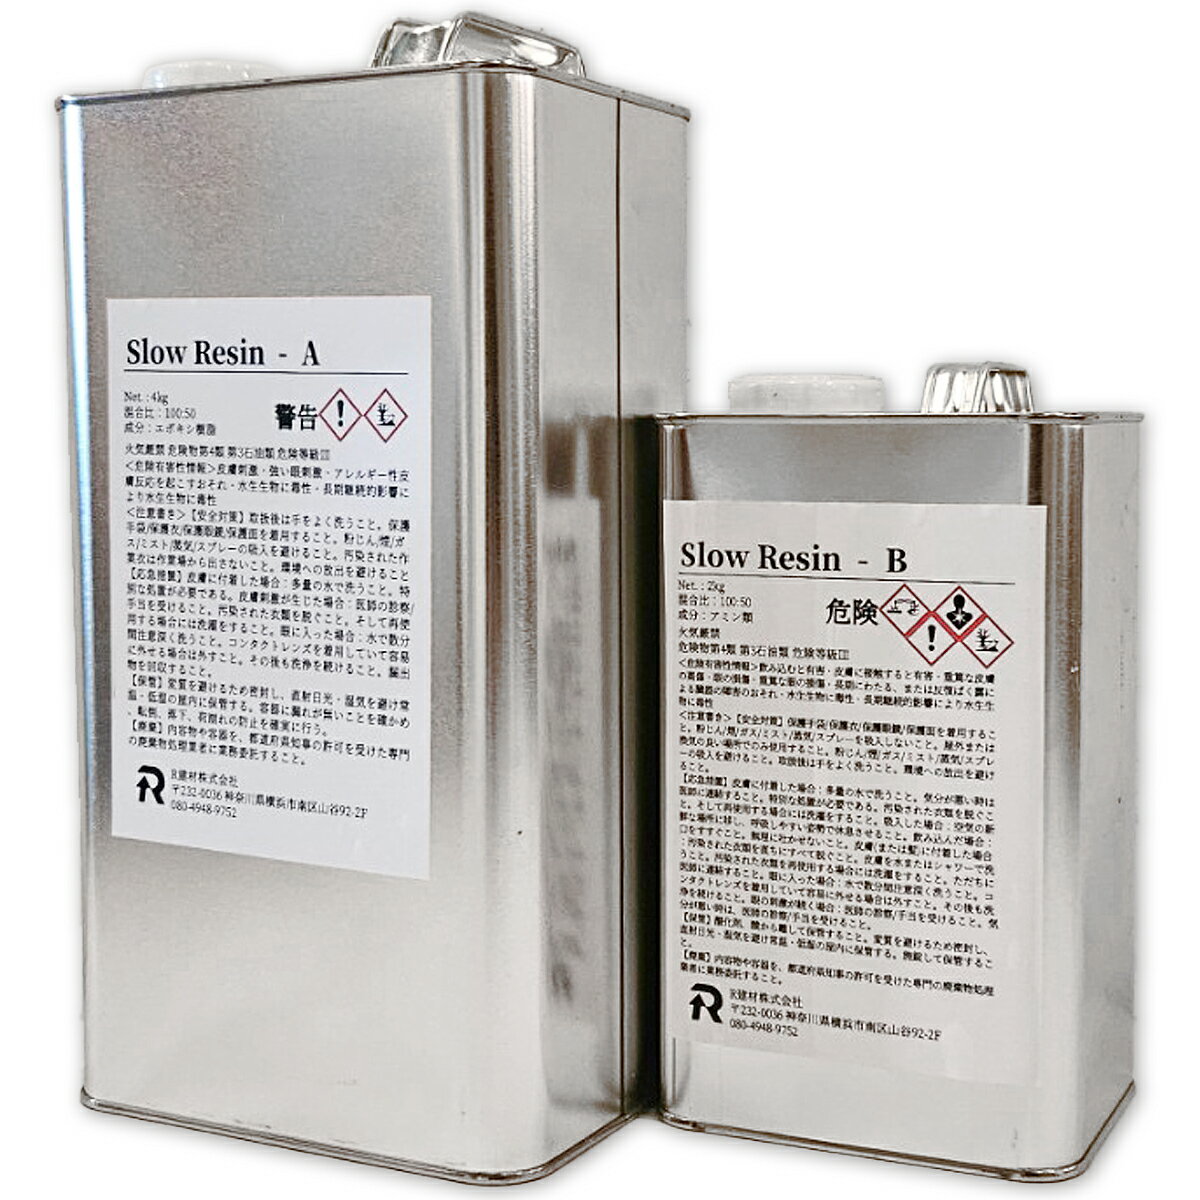 2液性エポキシ樹脂 スローレジン 6kgセット 日本製 Slow Resin 緩やかな硬化で大容量の注型用途に最適